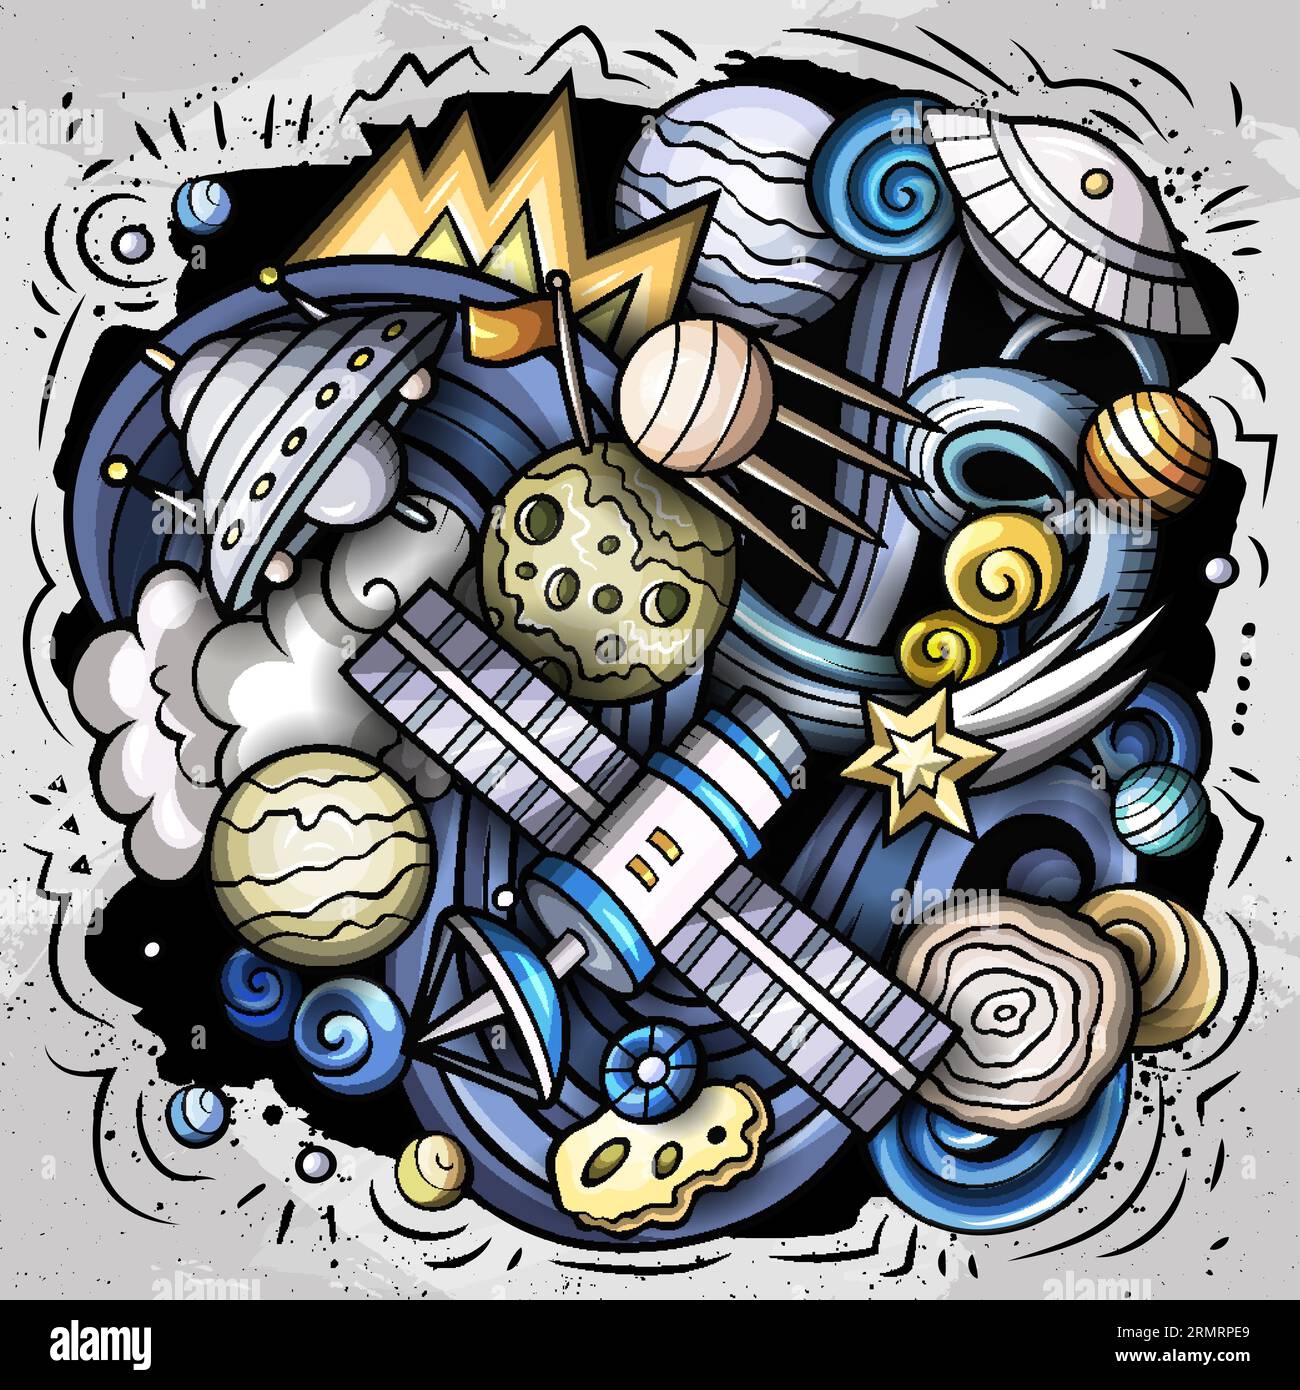 Von Hand gezeichnete Zeichentrickvektorkritzel zum Thema Outer Space Illustration zeigen eine Vielzahl kosmischer Objekte und Symbole. Auf dem Bild ist ein Wimpel Stock Vektor